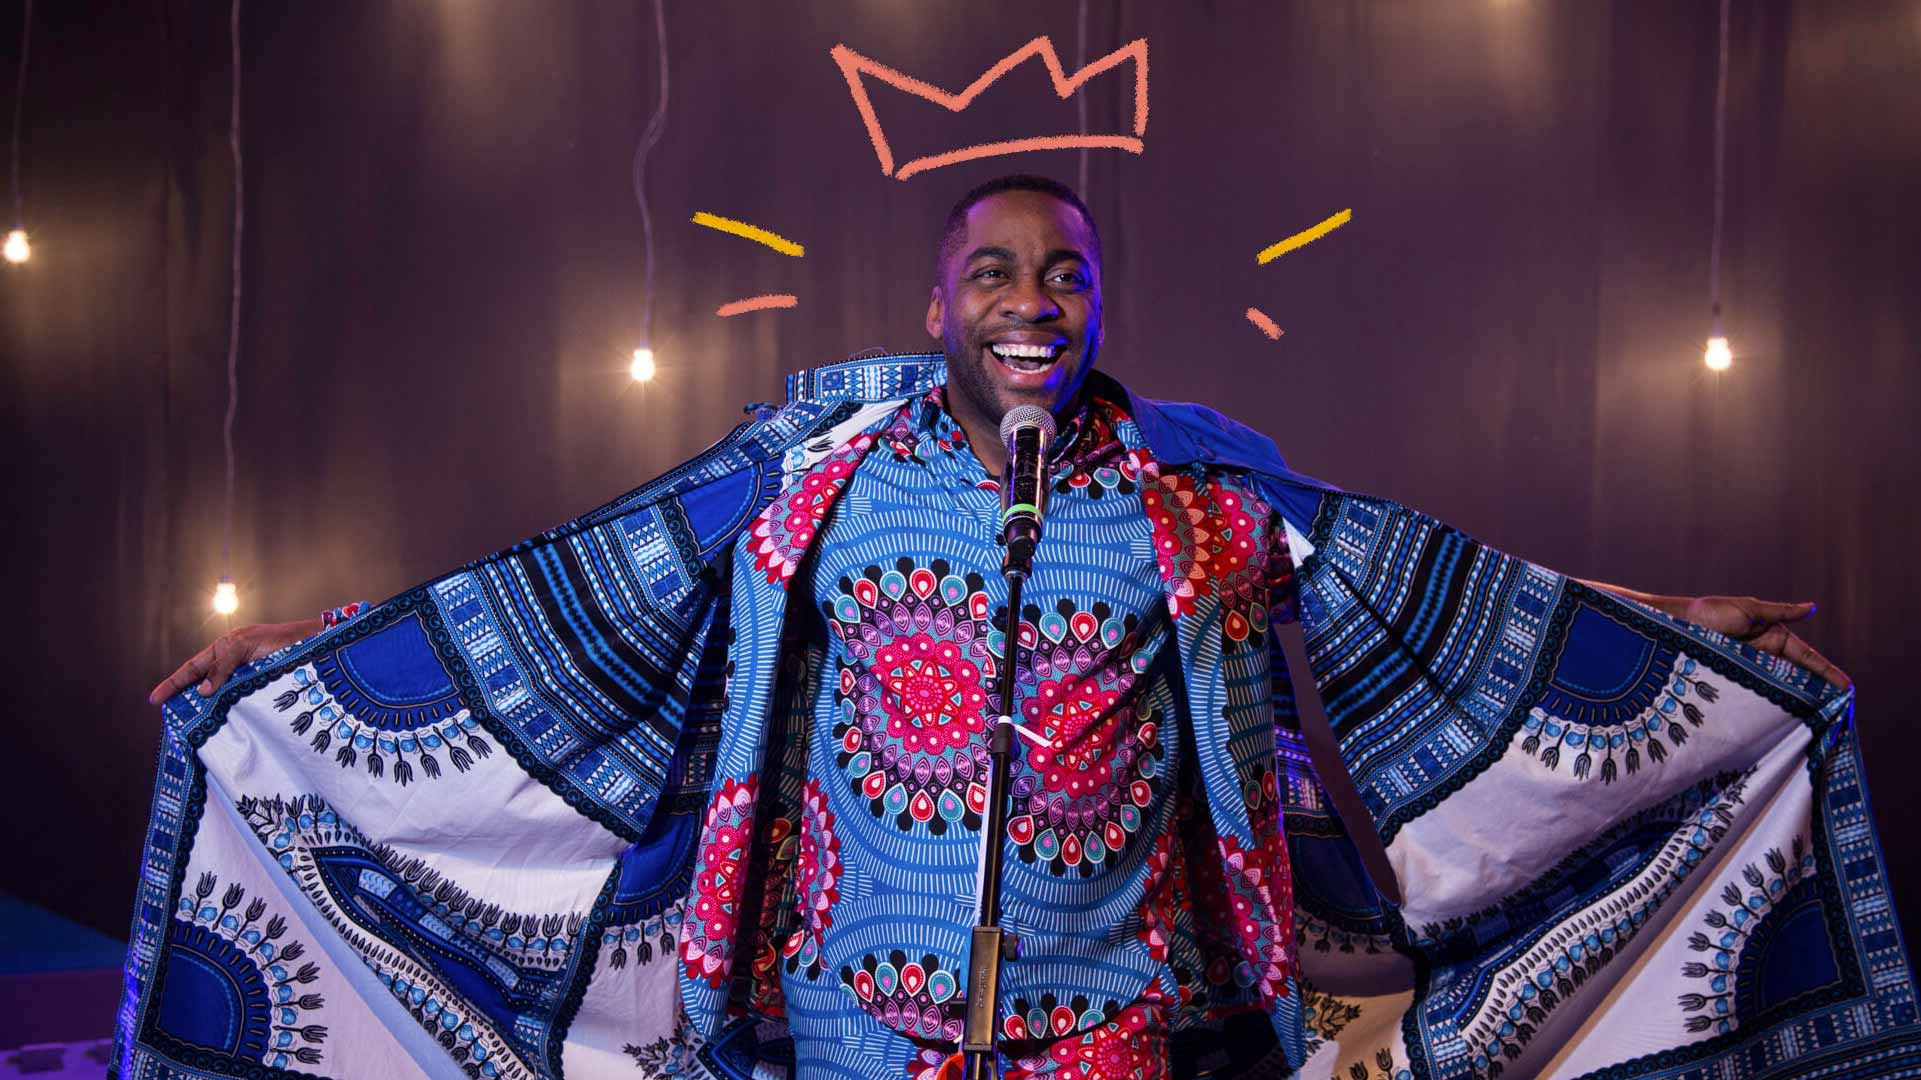 Imagem de Lázaro Ramos: ator, apresentador e diretor. Está com uma capa de rei, sorrindo e falando ao microfone.